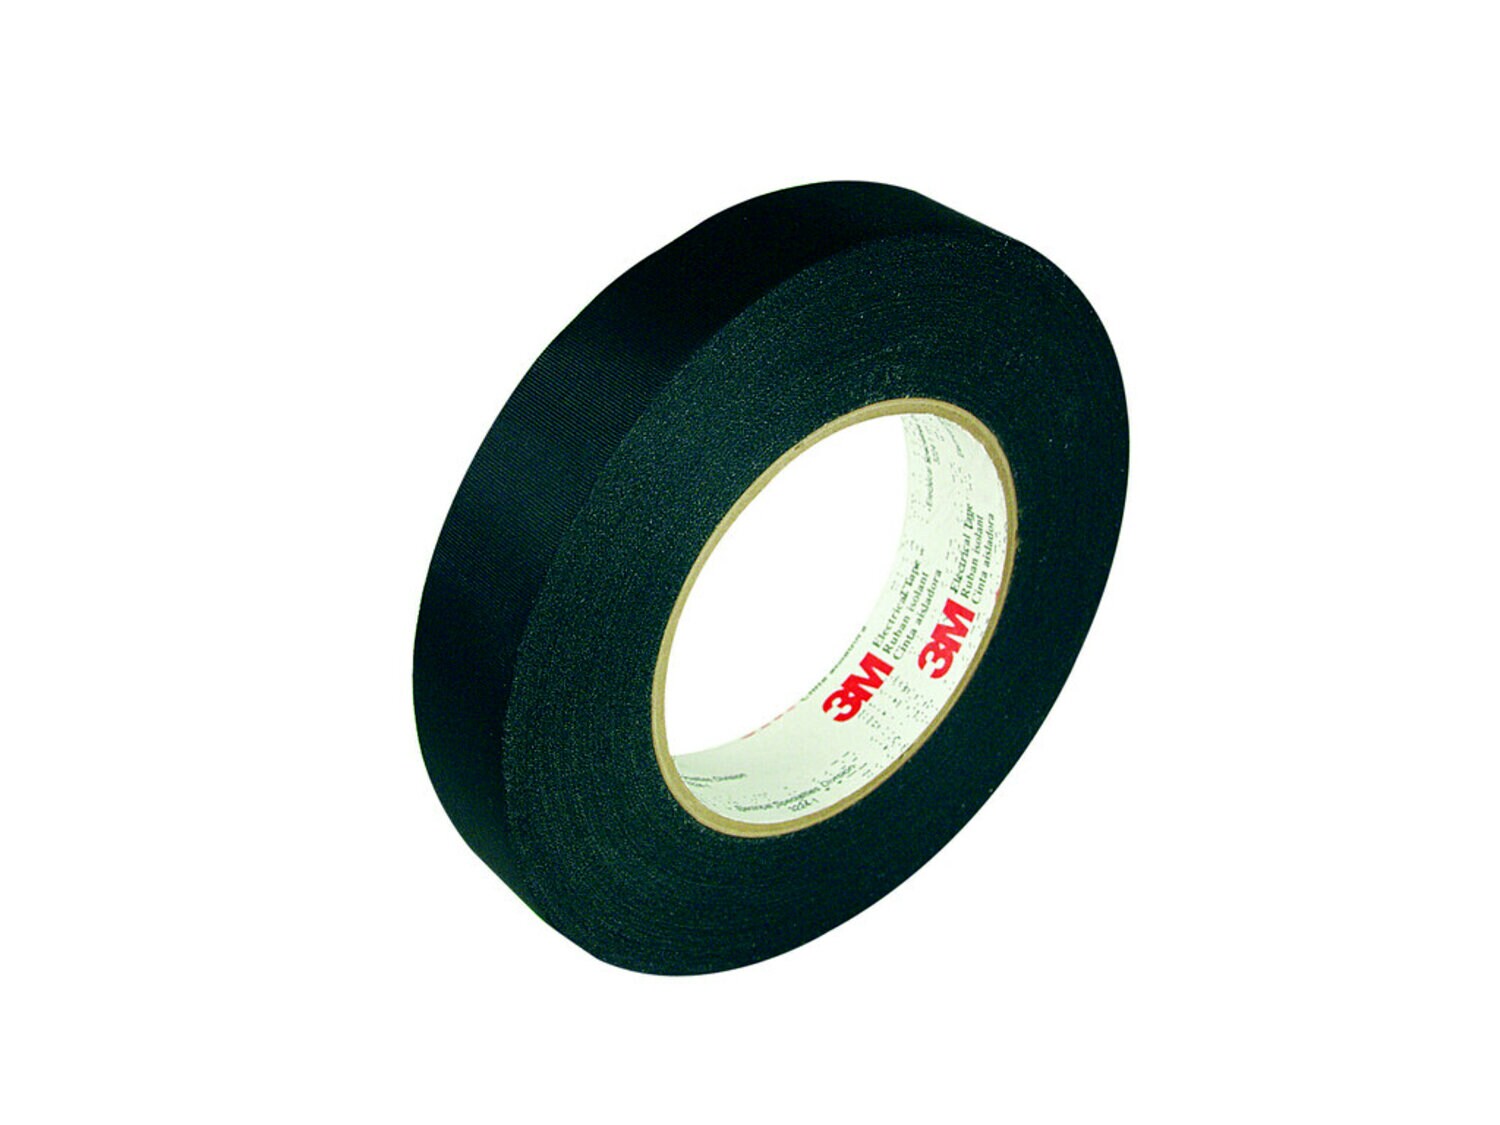 7010319703 - 3M Acetate Cloth Electrical Tape 11, 1-1/2 in x 72 yd, 3 in Paper Core,
Bulk, 24 Rolls/Case